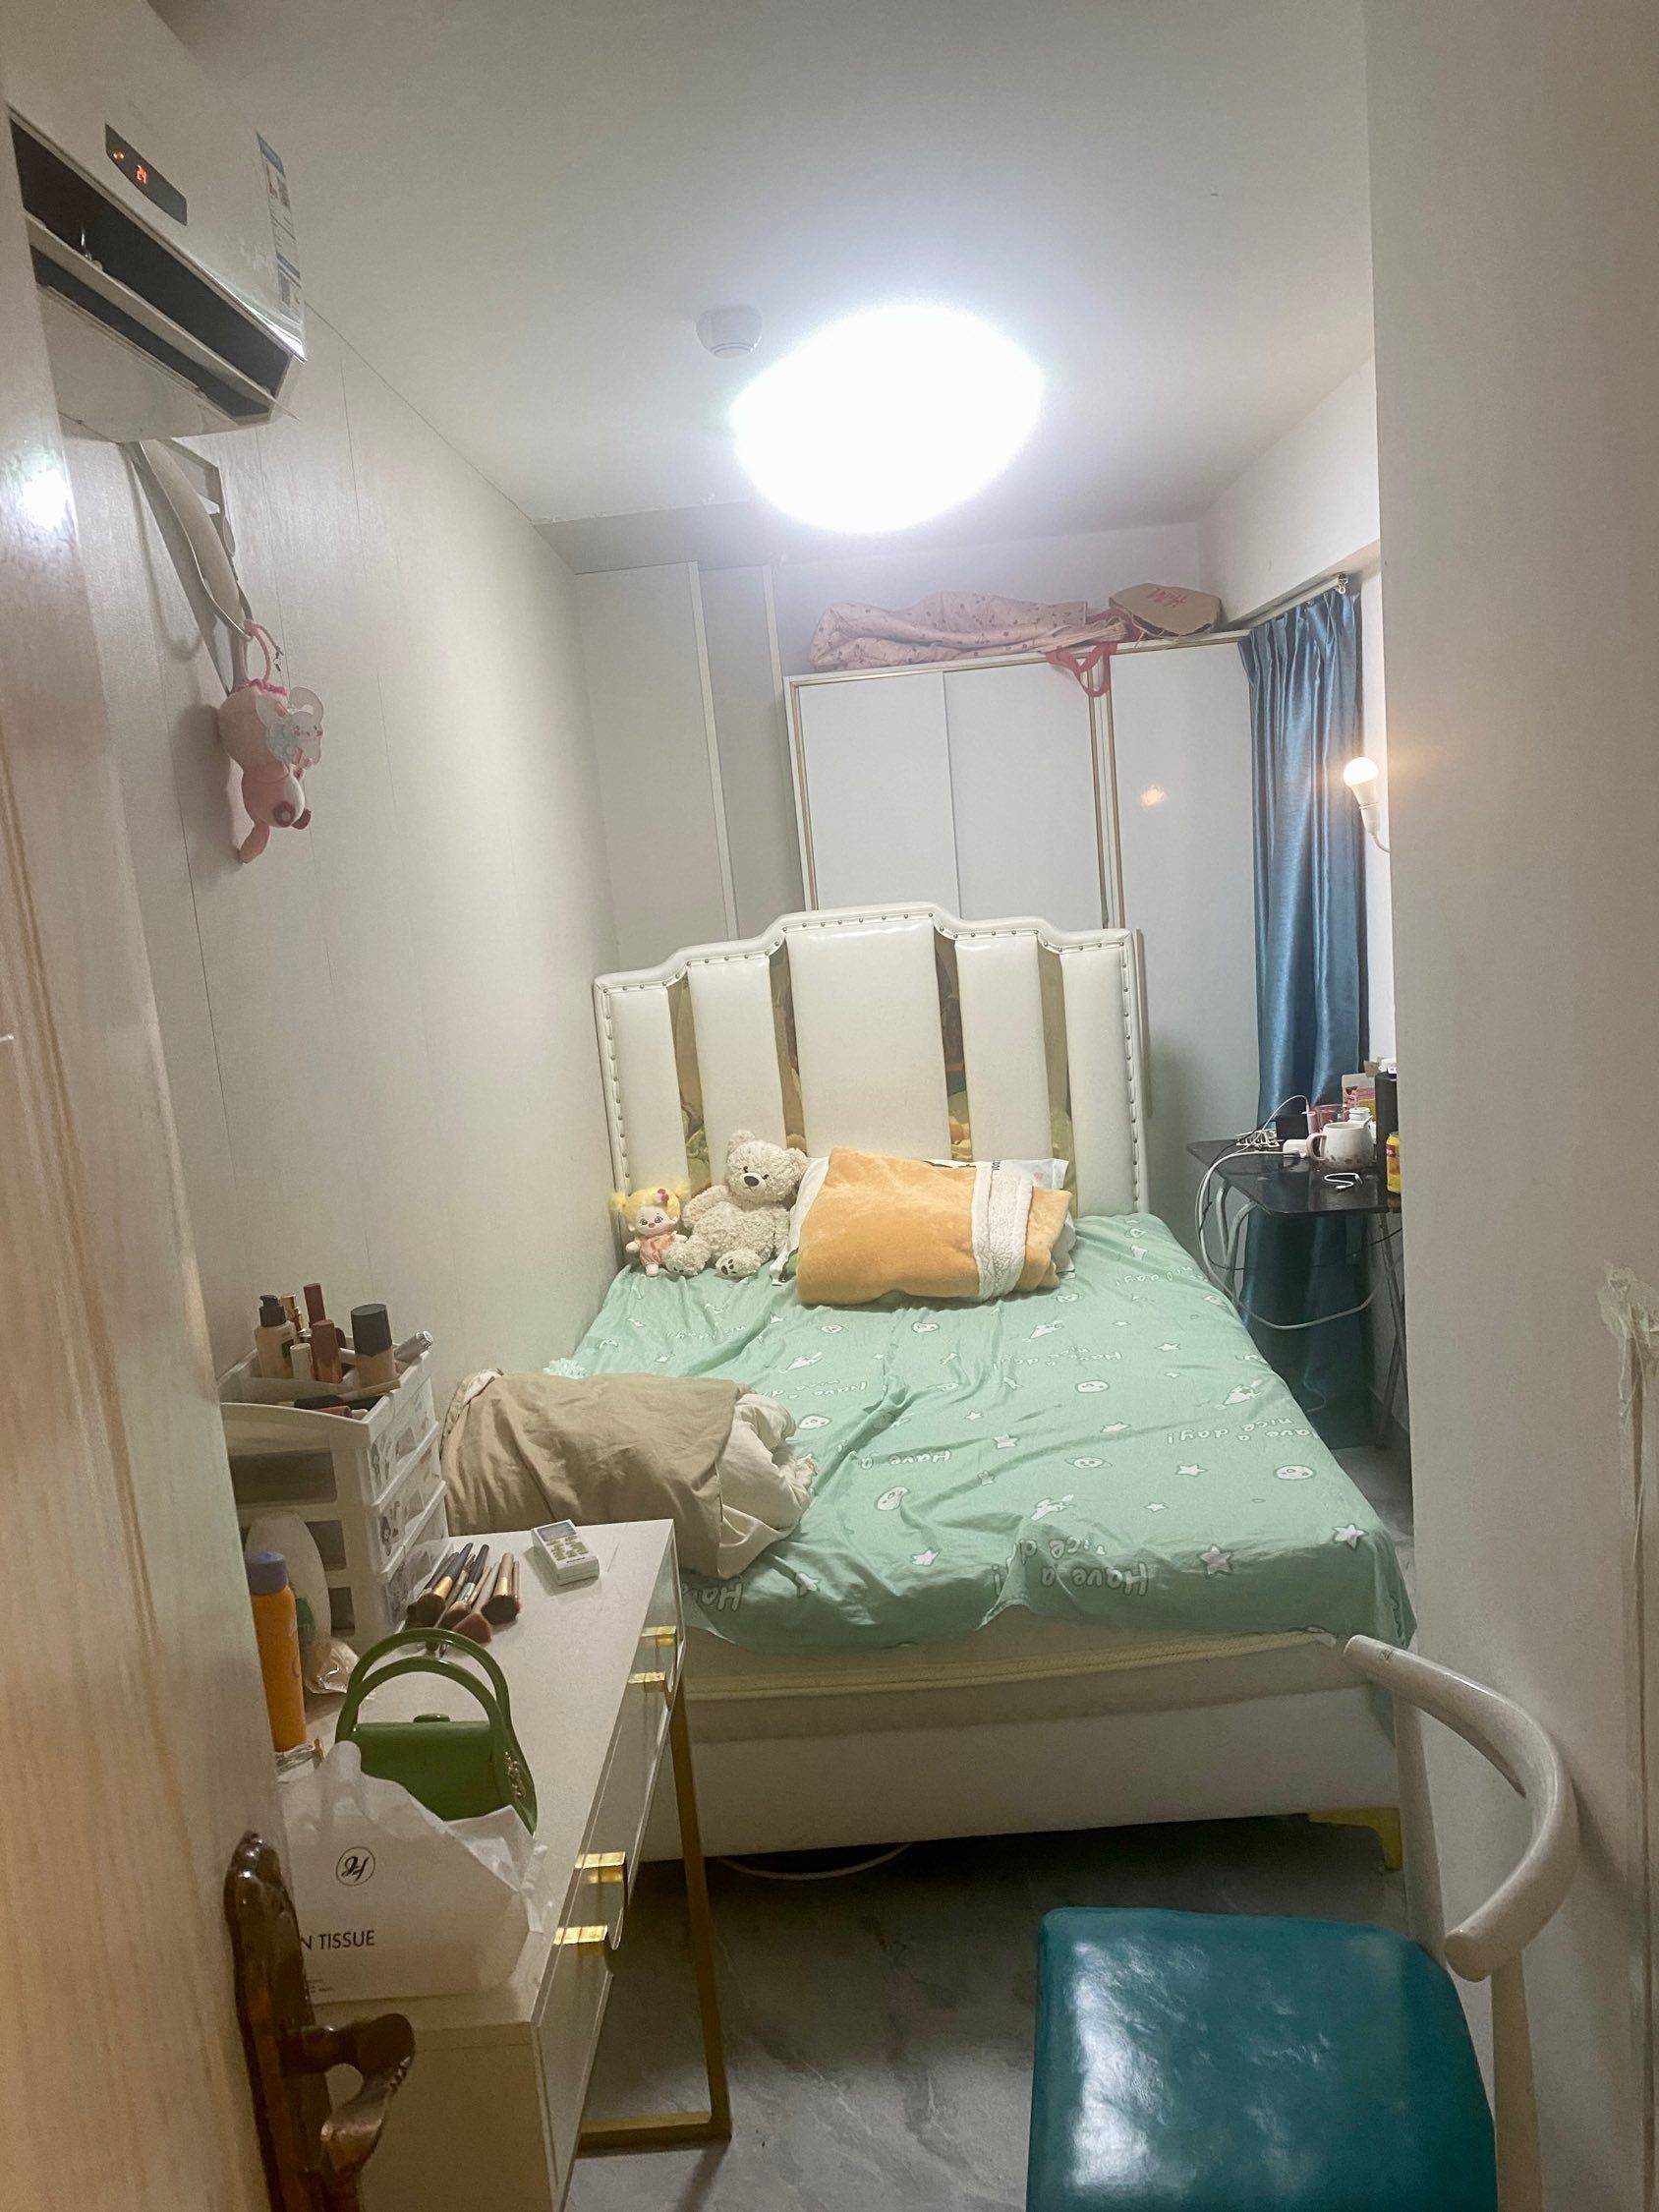 Xiamen-Huli-Cozy Home,Clean&Comfy,No Gender Limit,LGBTQ Friendly,Pet Friendly